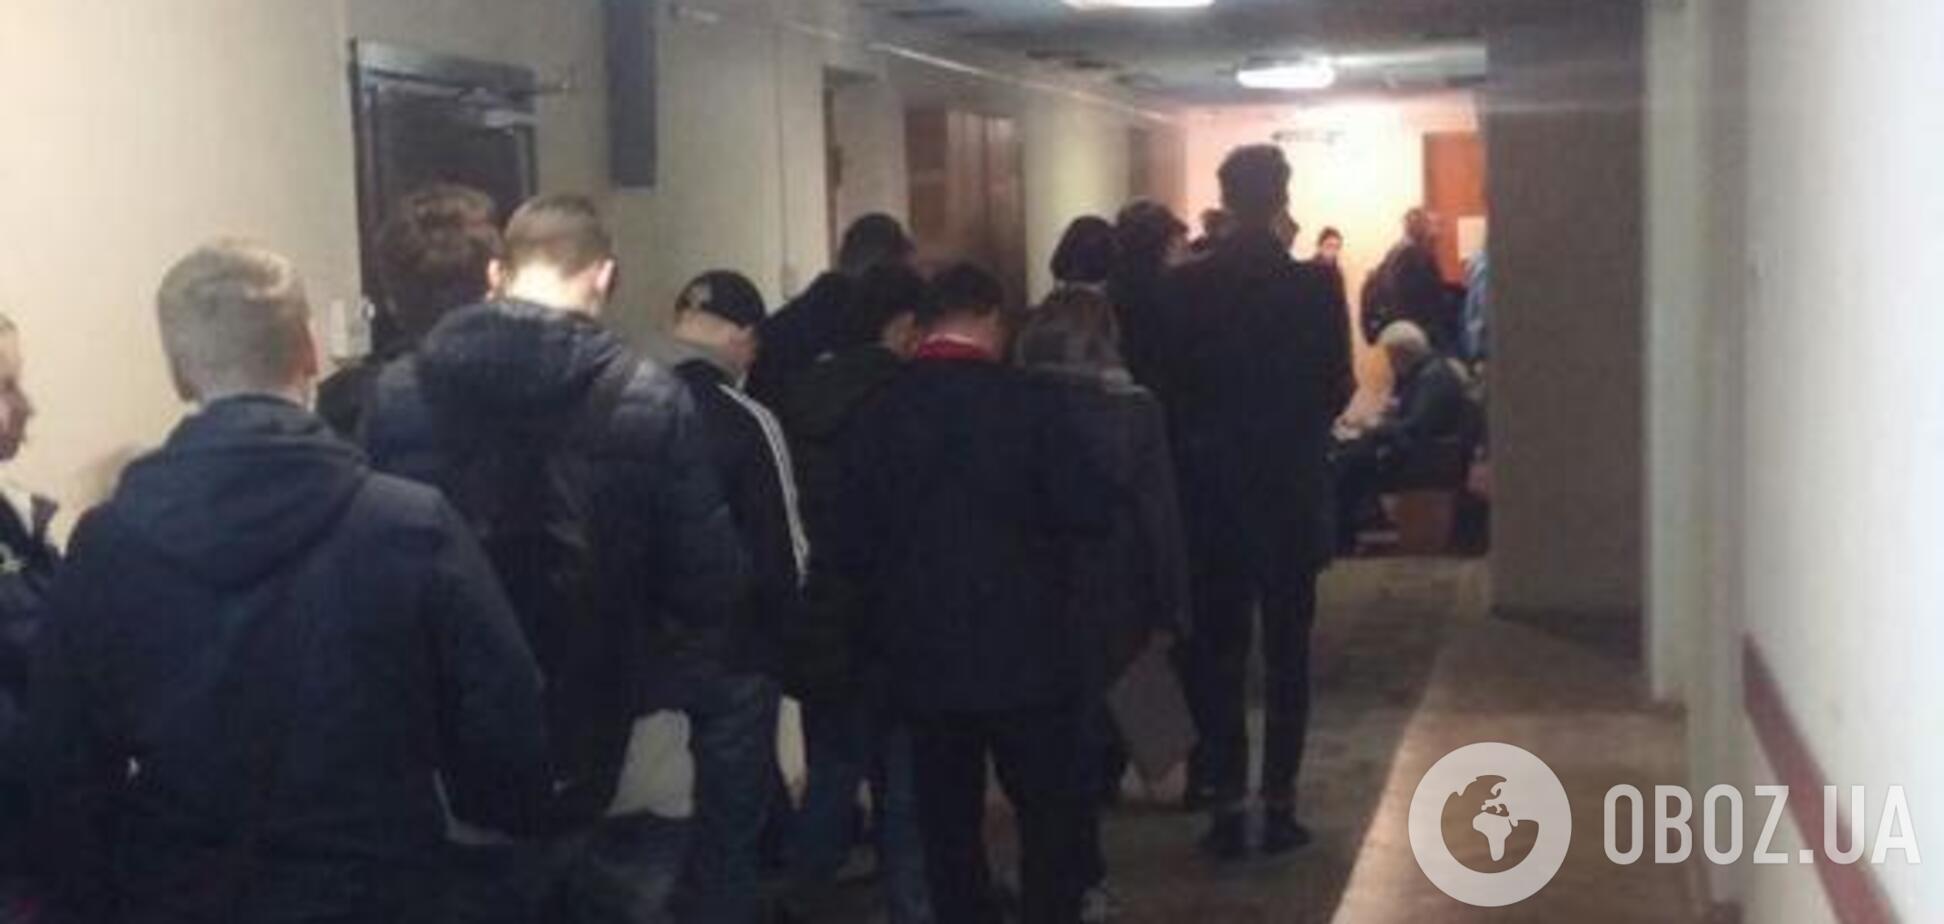 У черзі по 6 годин: у Києві виник колапс через вибори президента